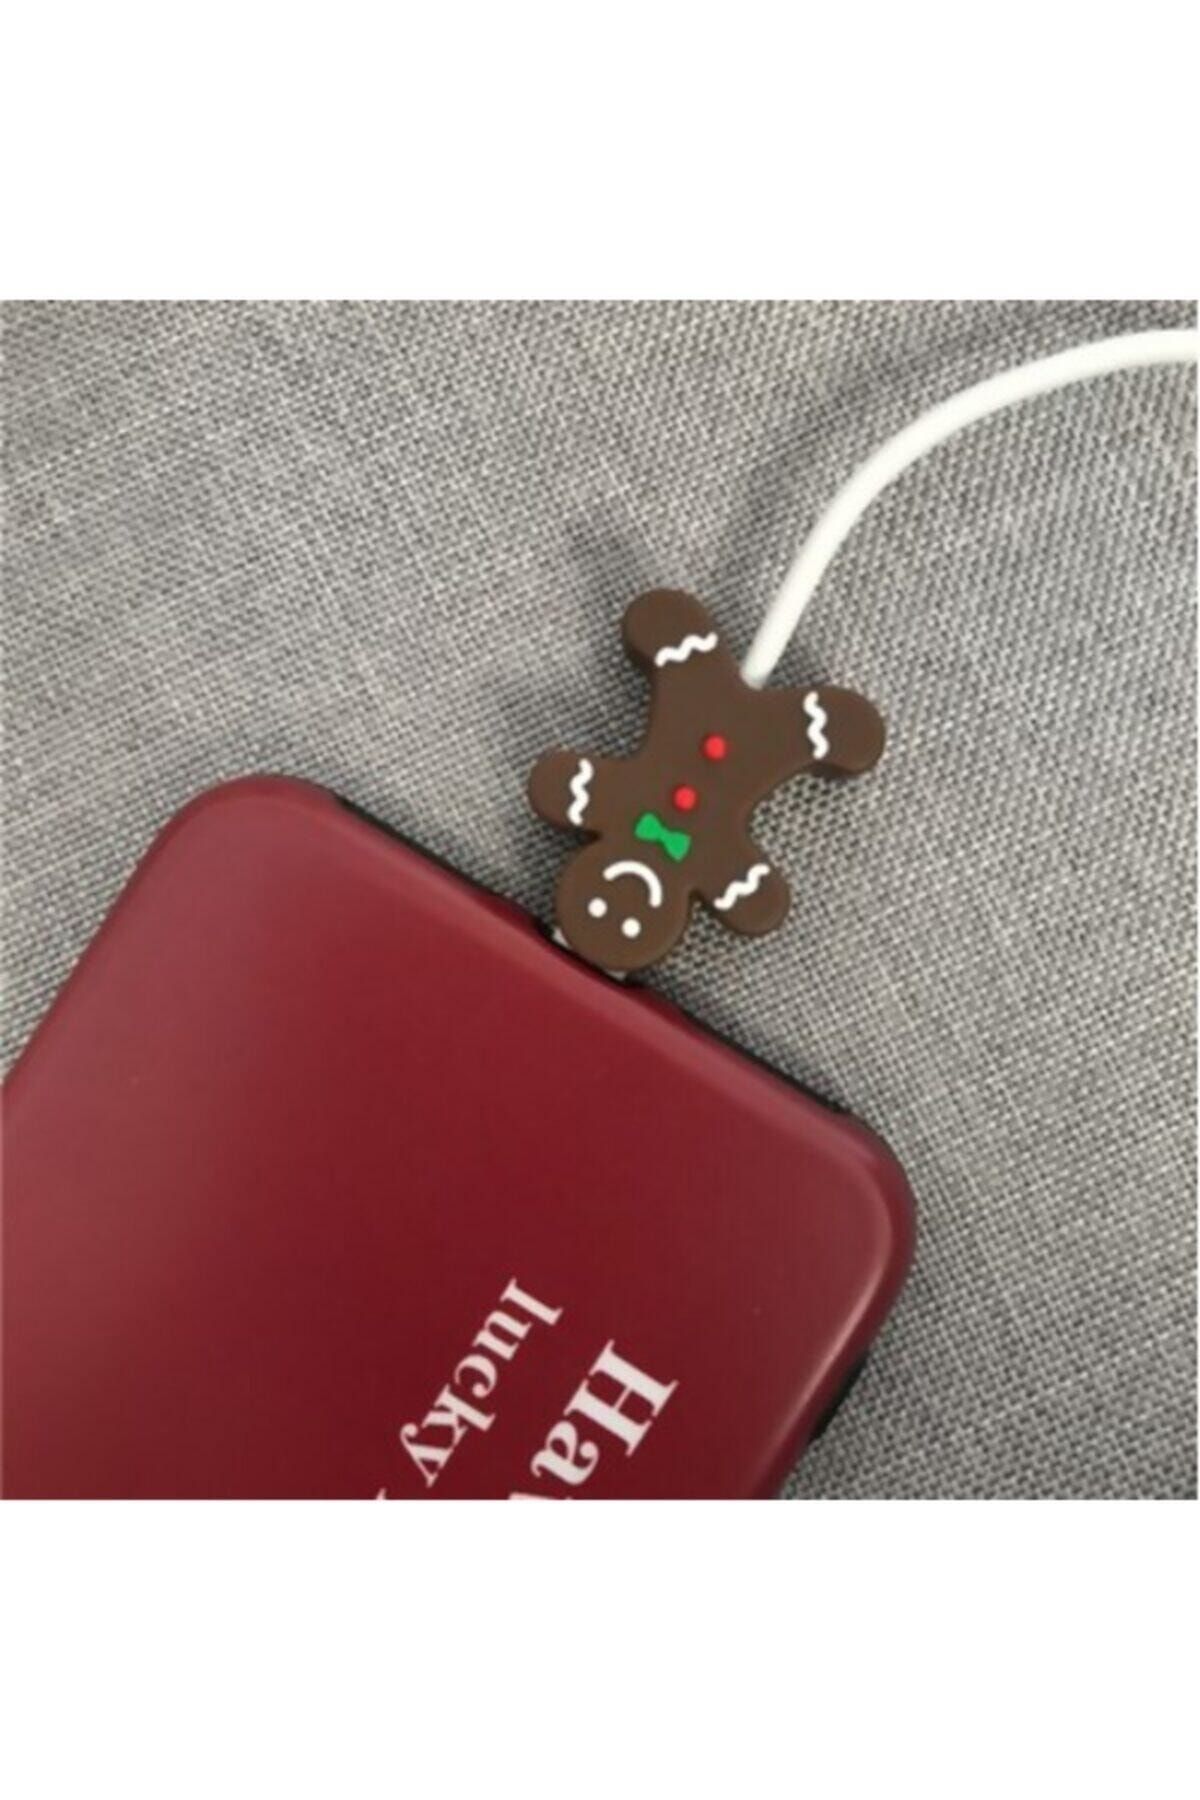 MY MÜRDÜM Sevimli Silikon Kablo Koruyucu Gingerbread Man